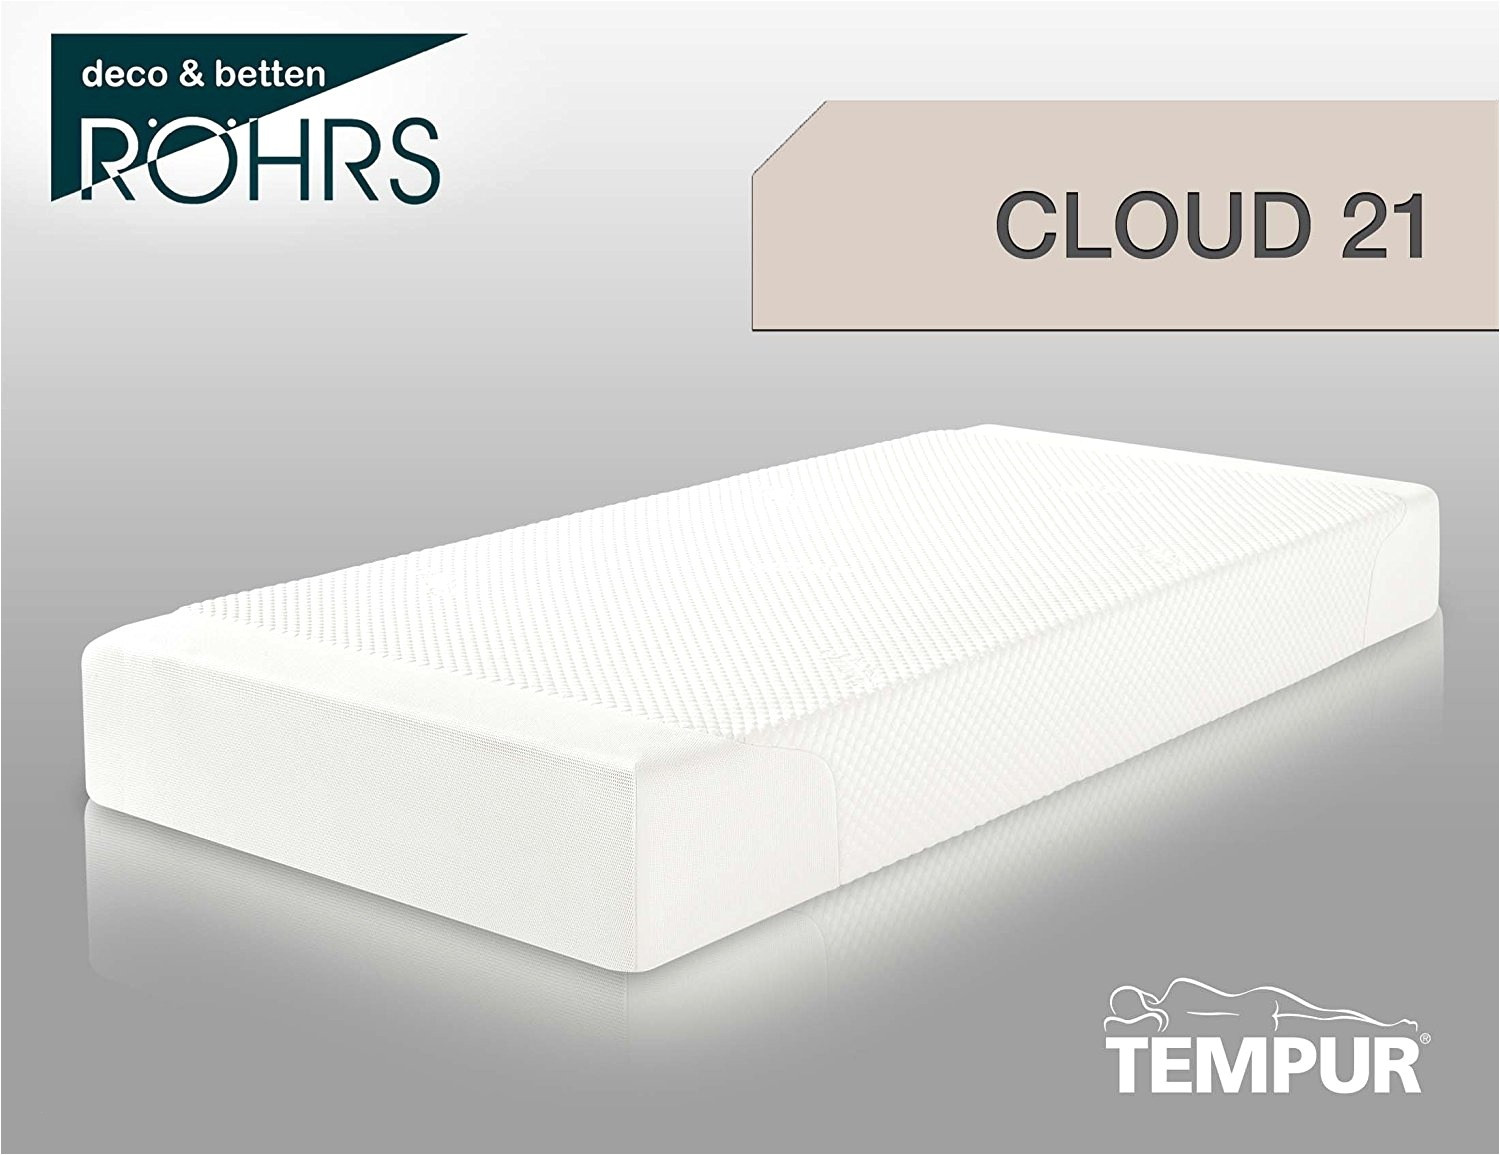 tempur cloud matras better matraten luxus herrlich matratzen preis 0d af ac haus und design foto s